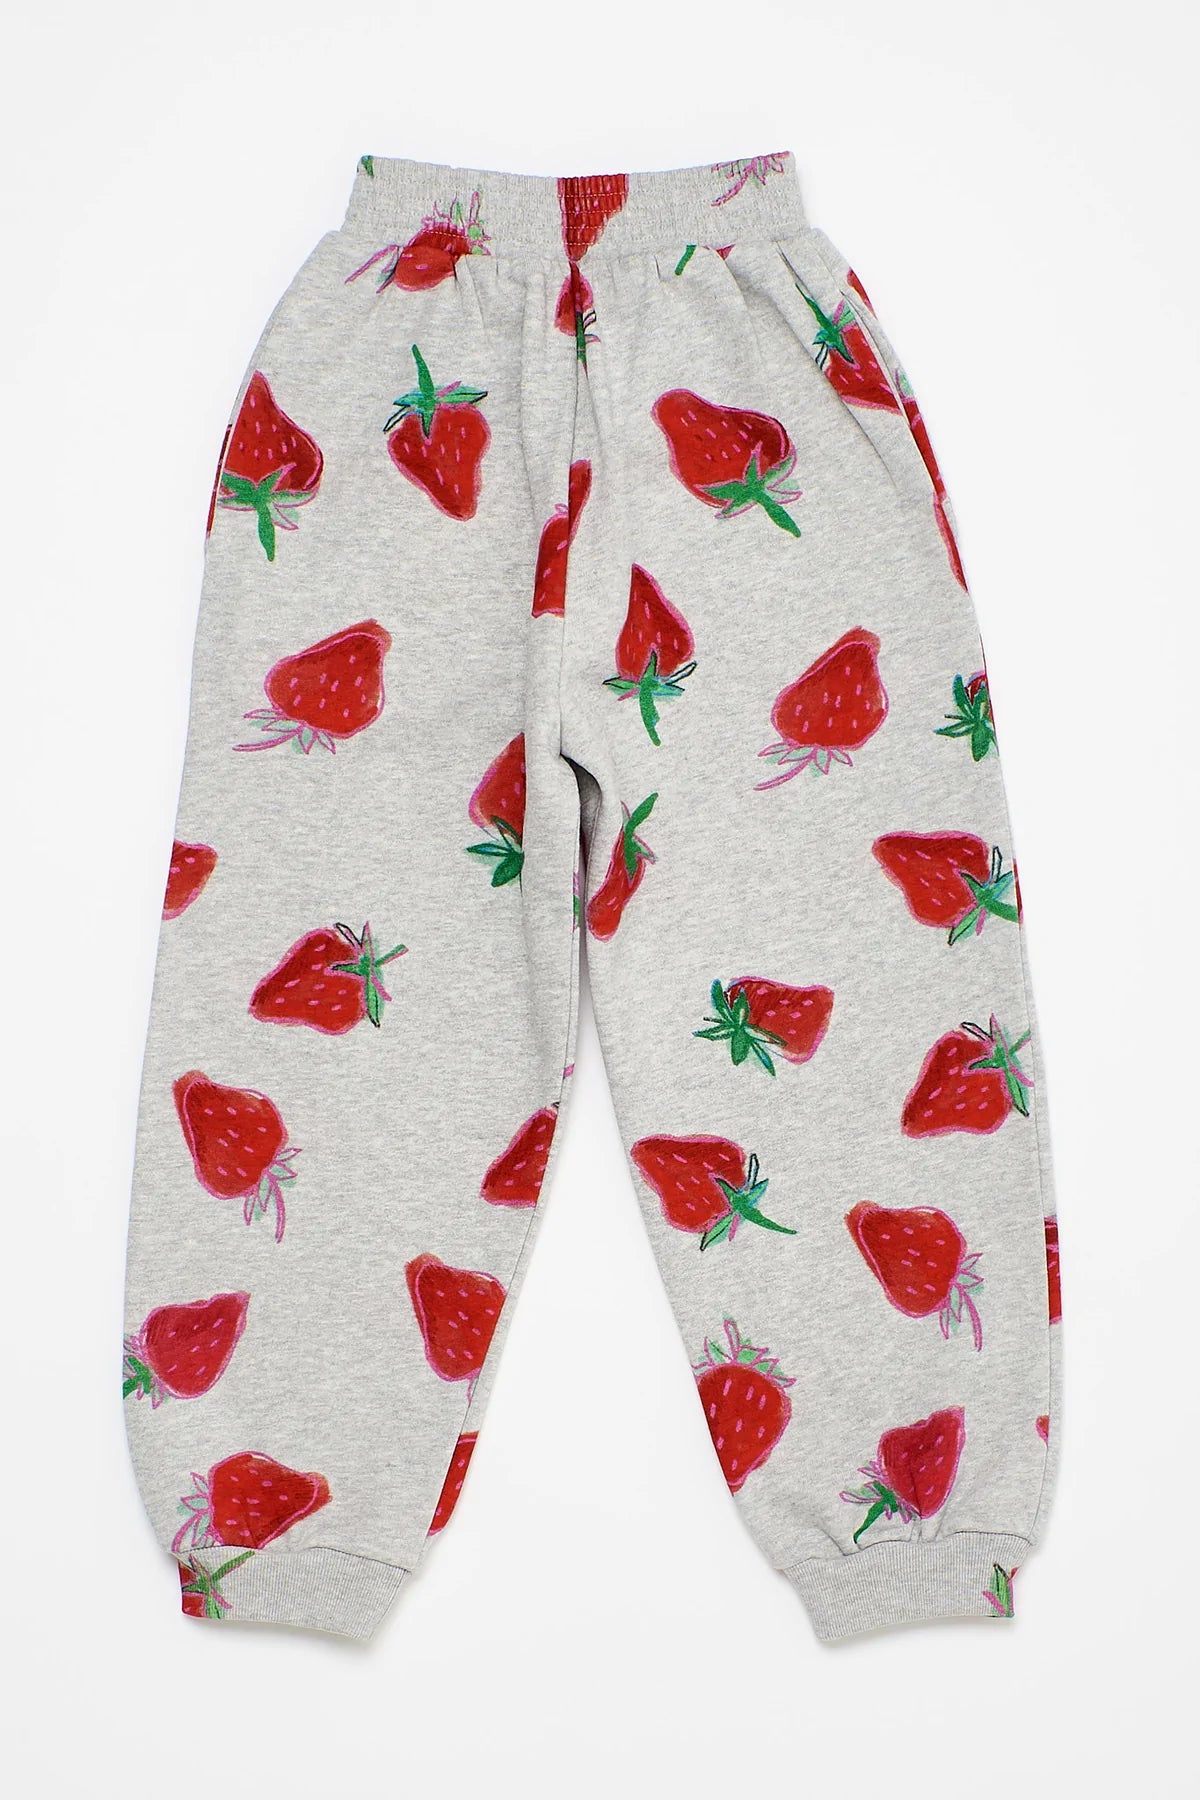 Strawberries Grey Pants 8Y